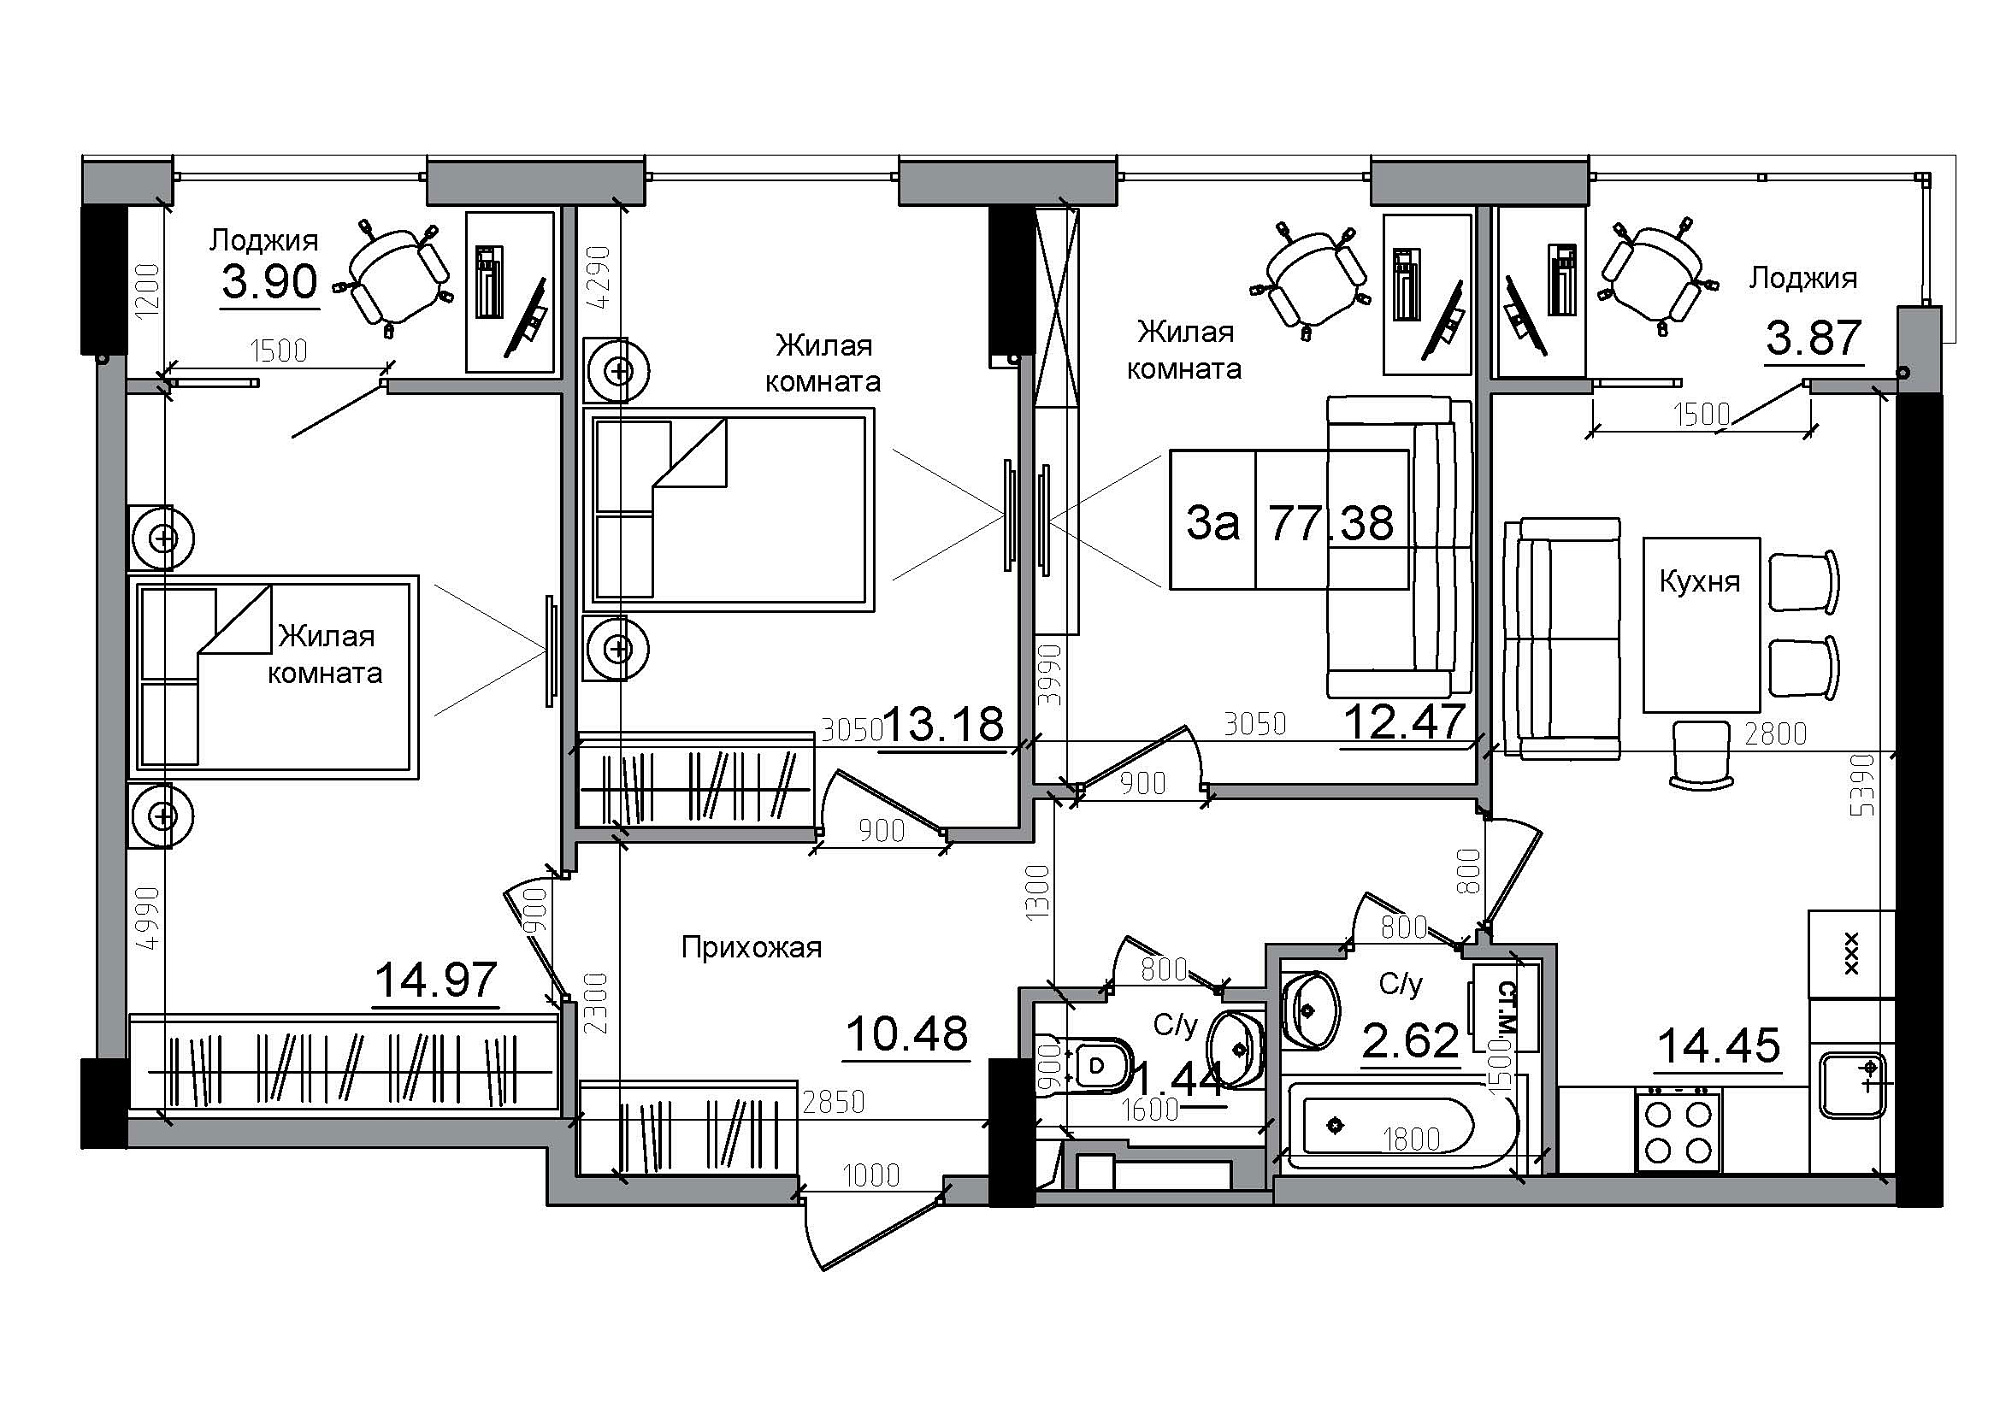 Планування 3-к квартира площею 77.38м2, AB-12-02/00010.